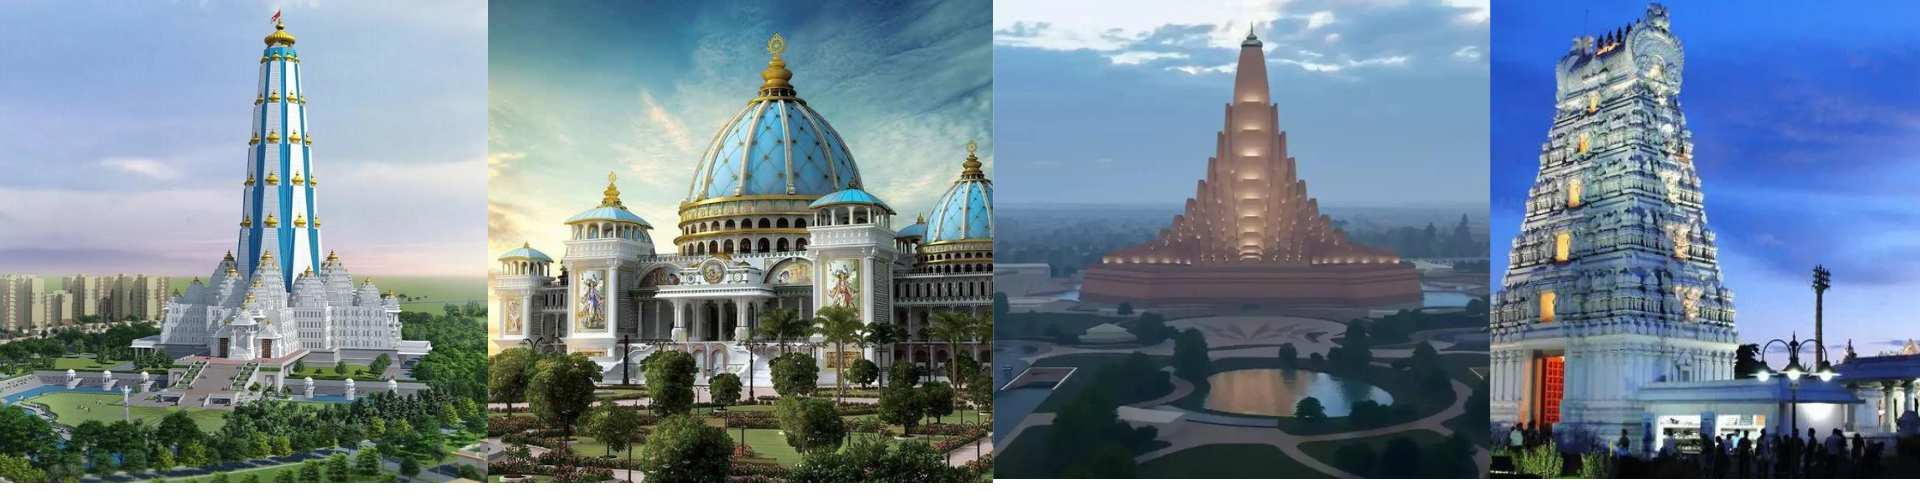 भारत में बन रहे 5 प्रतिष्ठित हिंदू मंदिर – 5 Upcoming Grand Hindu Temples in India